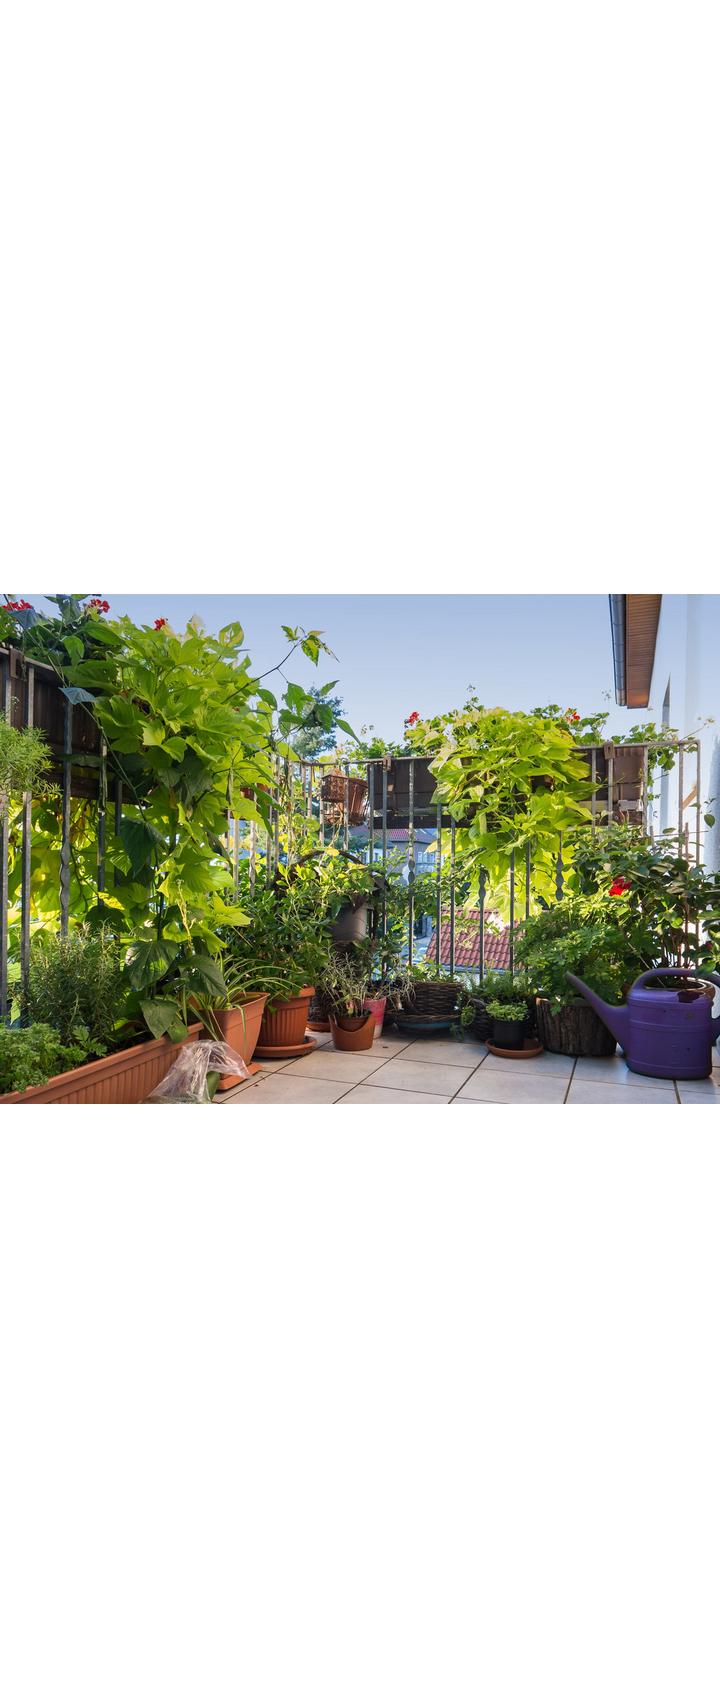 Balkon mit einer Vielfalt an Pflanzen